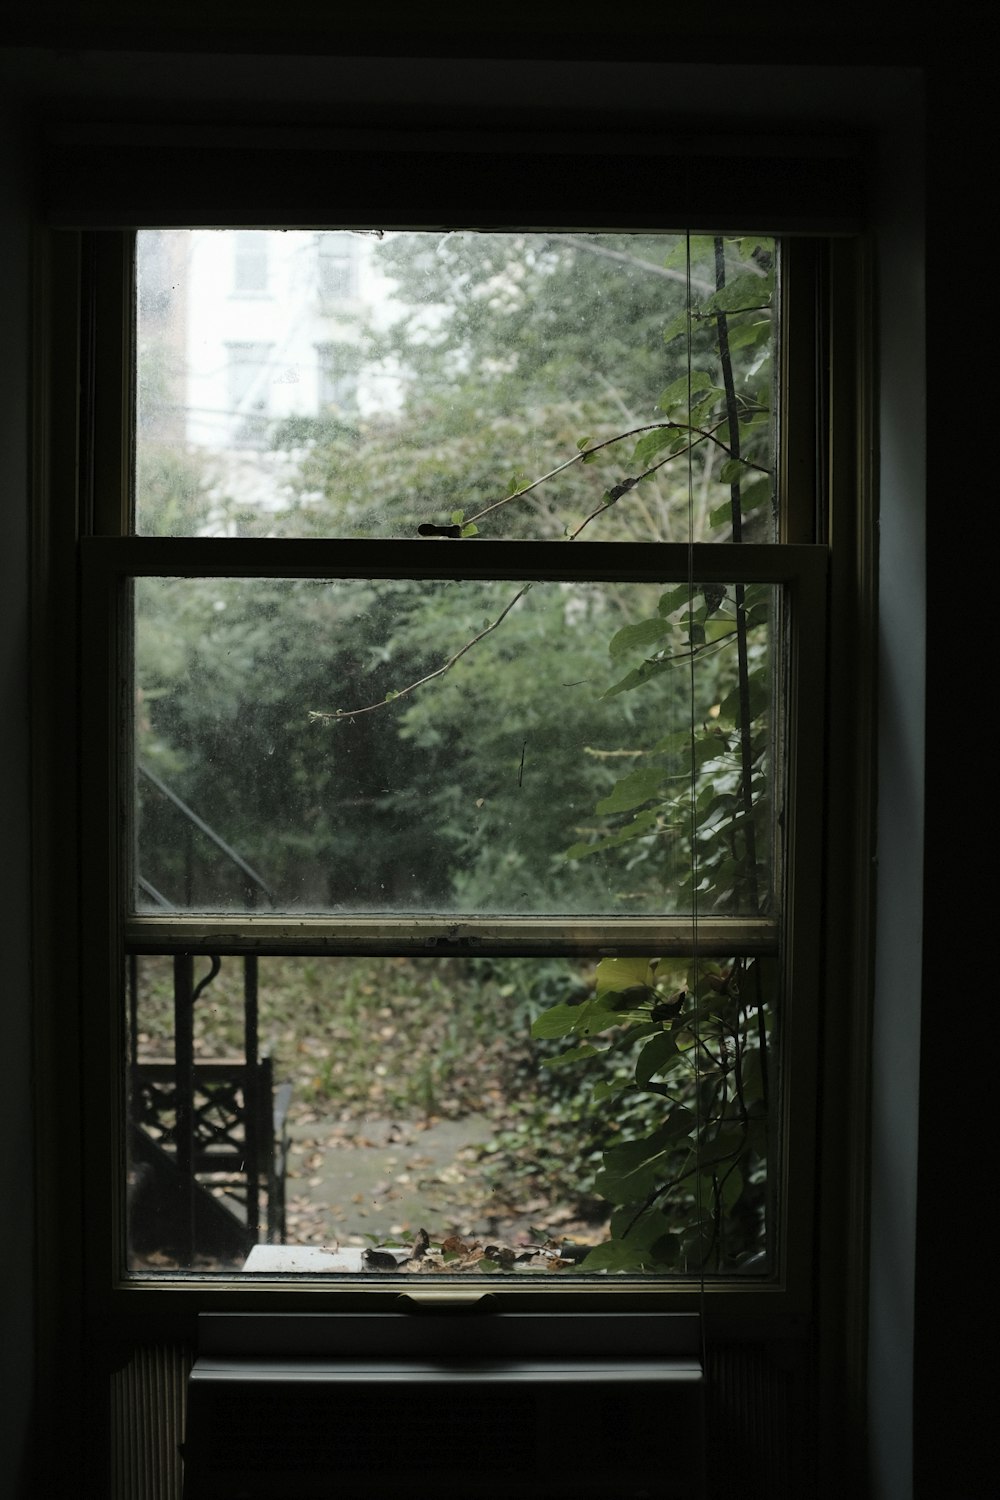 finestra di vetro trasparente chiusa davanti alle piante